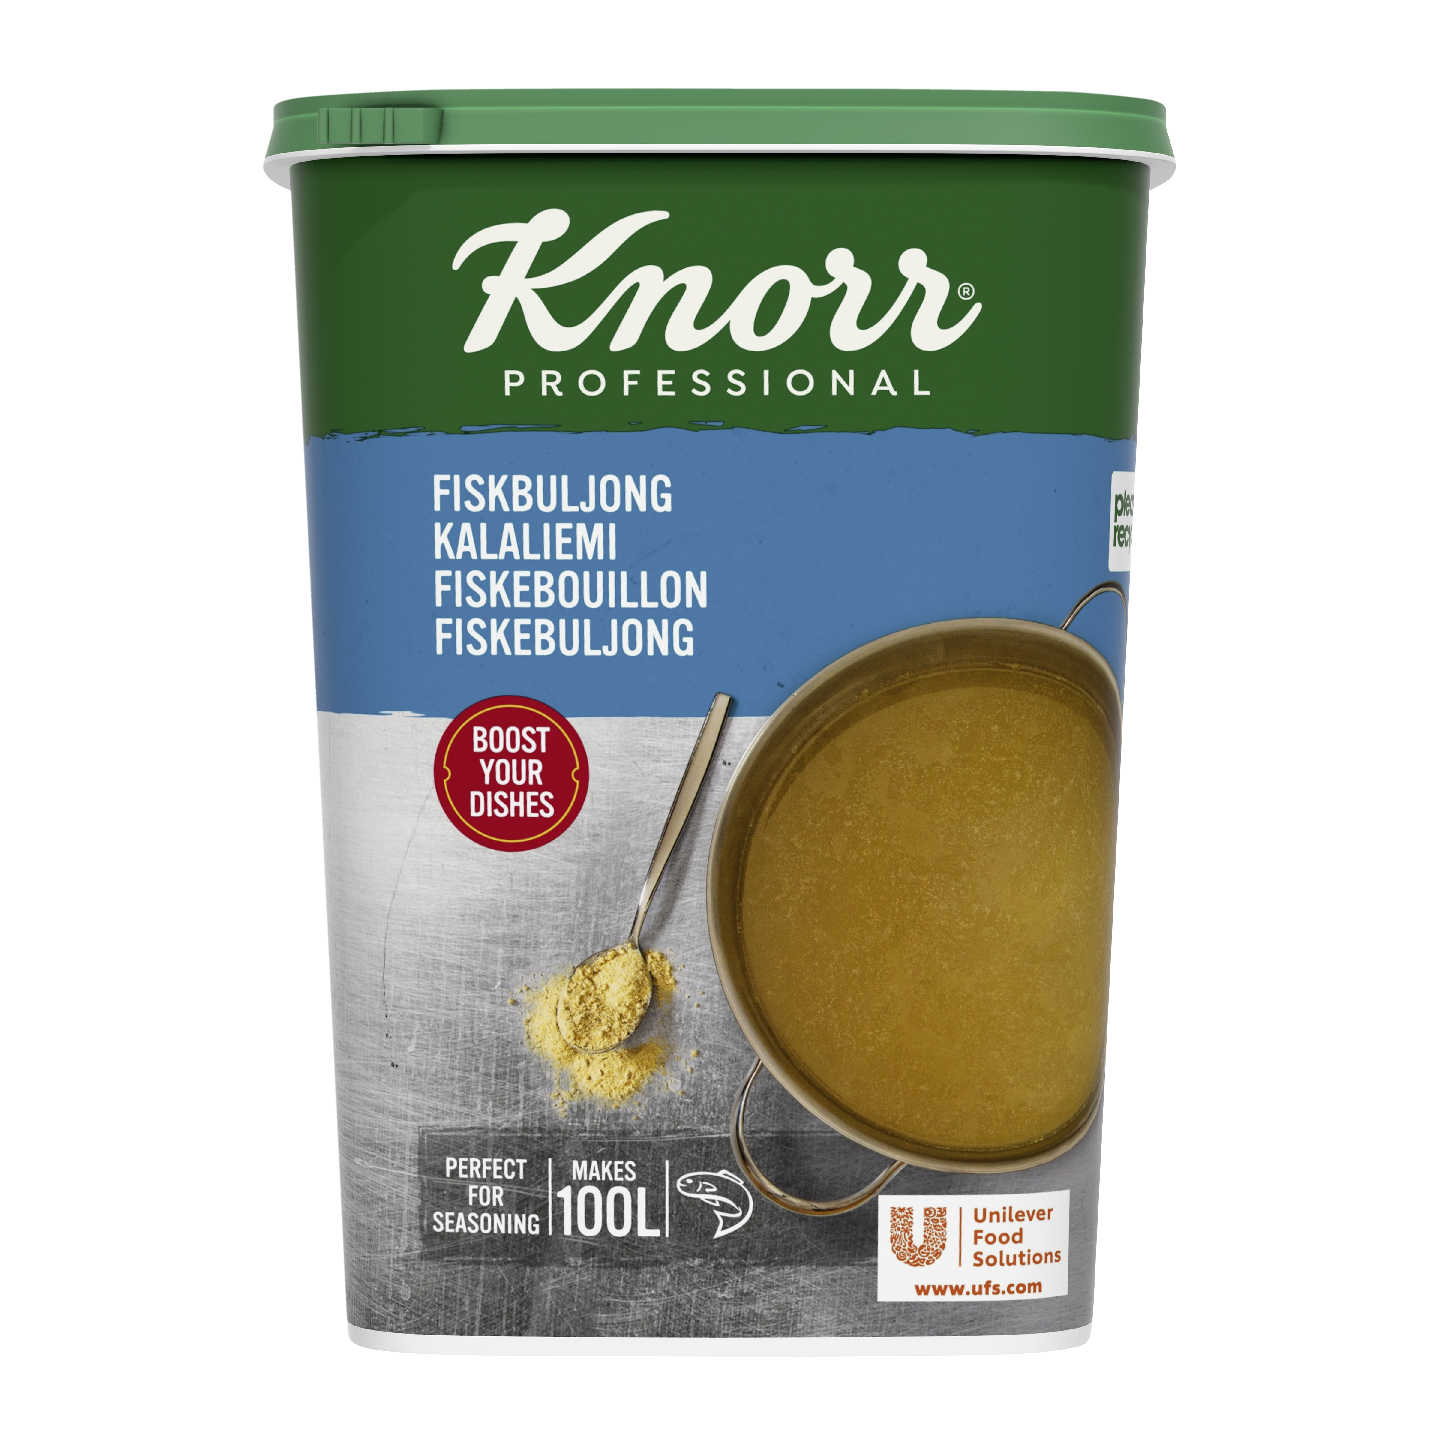 Knorr kalaliemi 1,5kg/100l